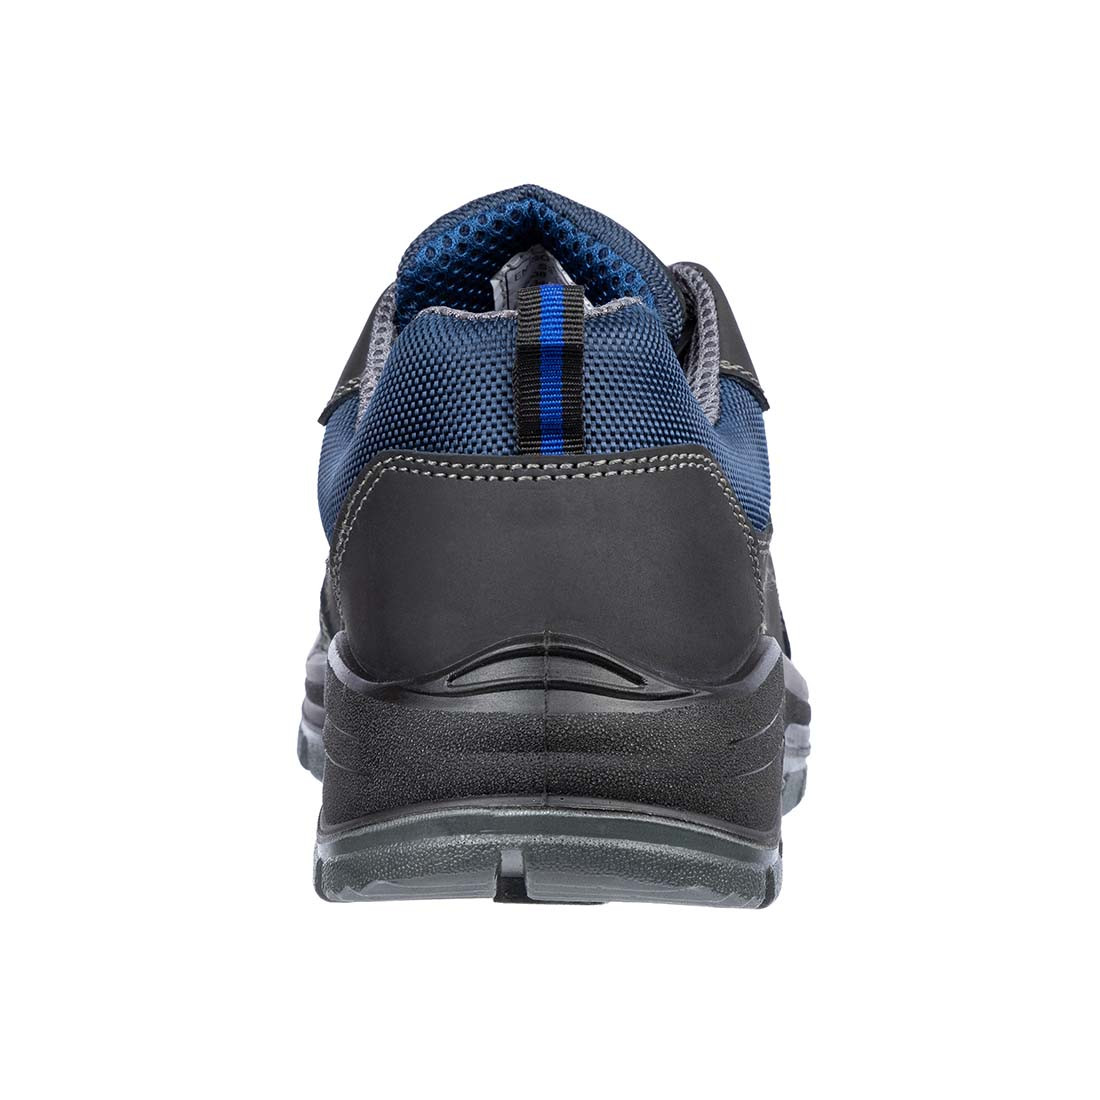 Chaussures de sécurité SAFE LOW S3 - Les chaussures de protection